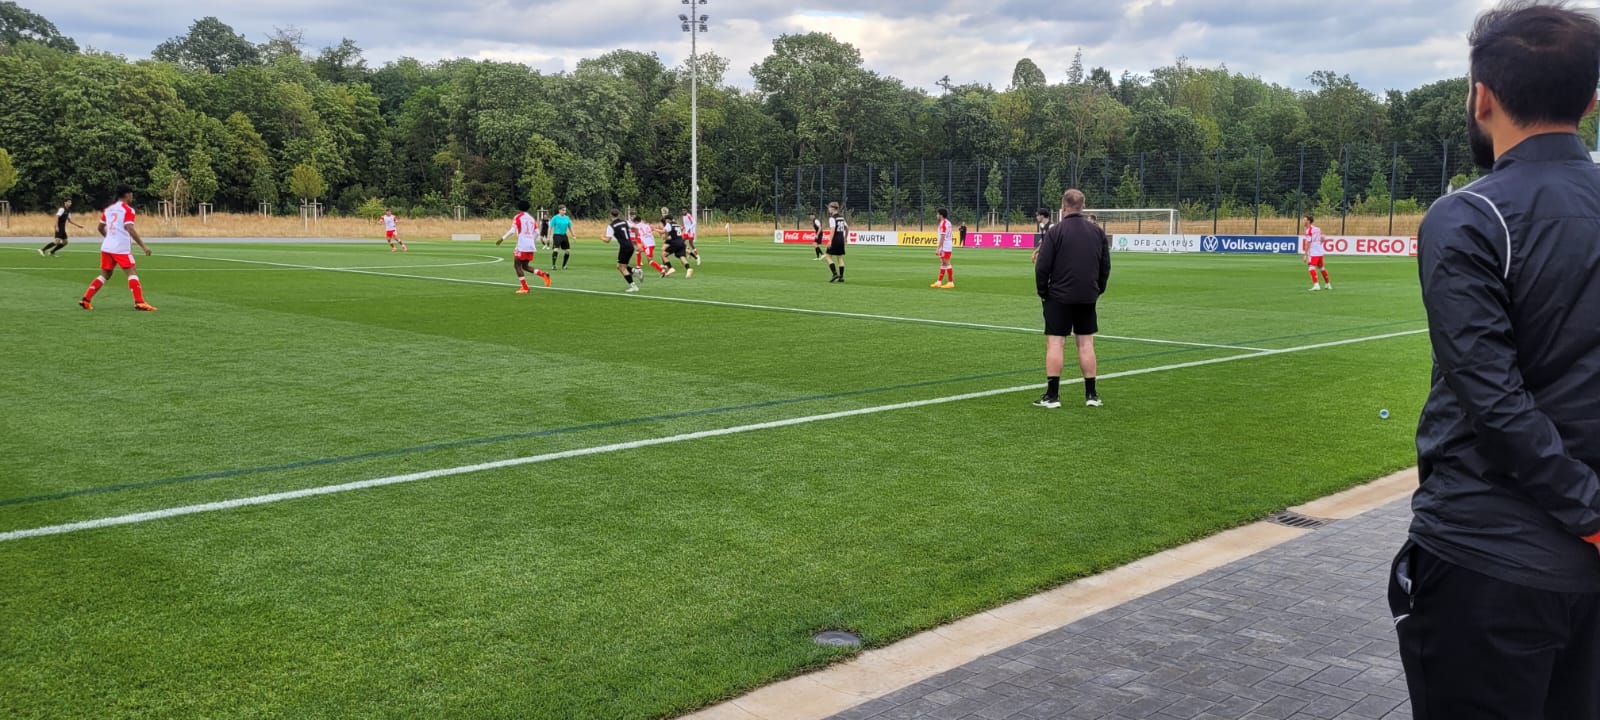 U19 testet auf DFB Campus gegen FC Bayern U19 World Squad-Auswahl